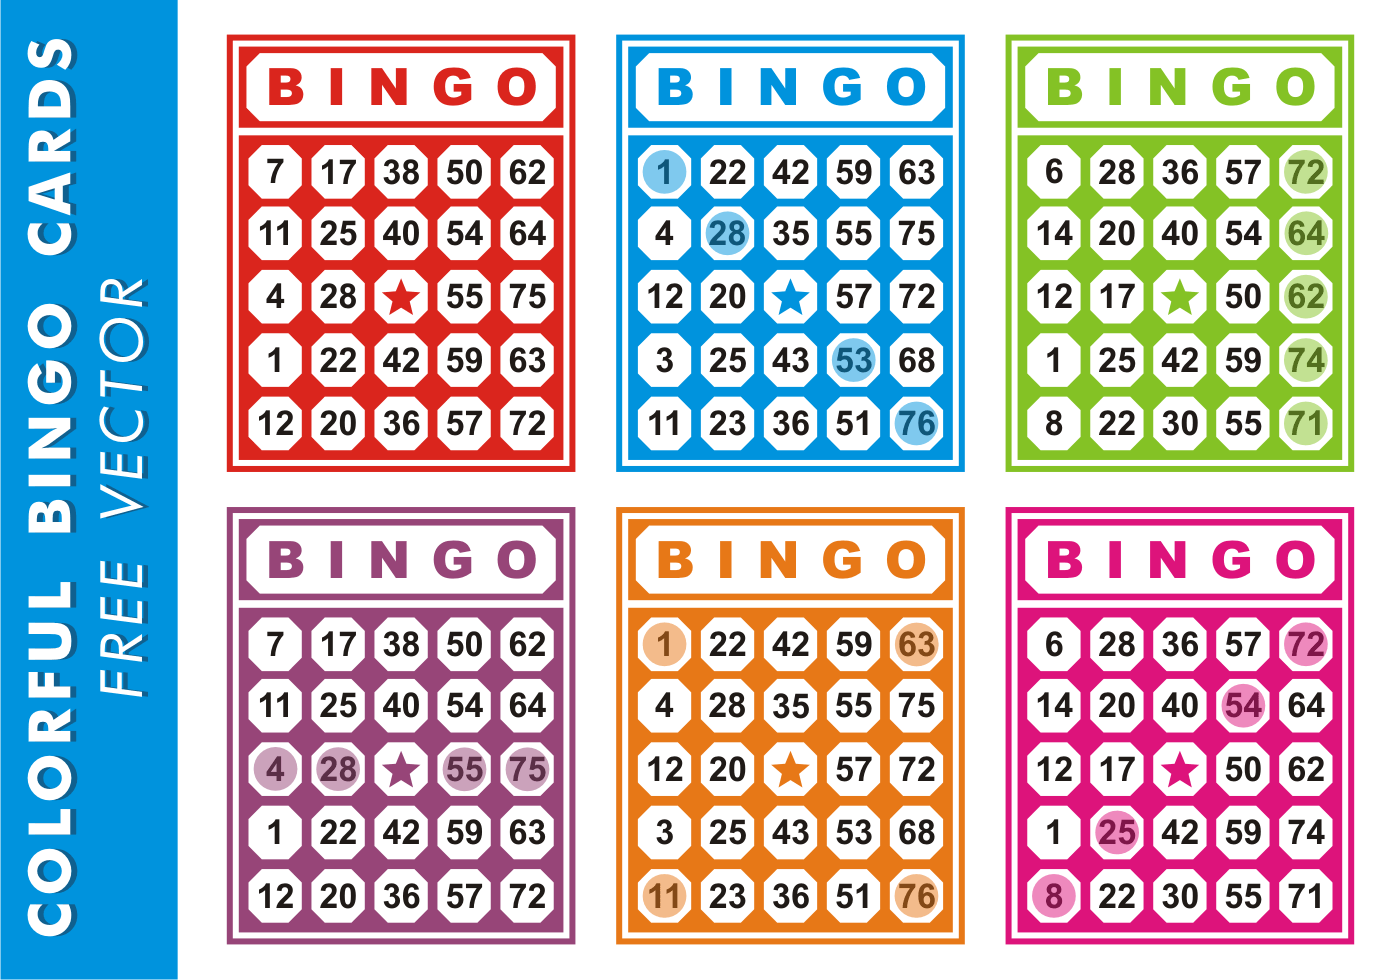 Home bingo games set up online